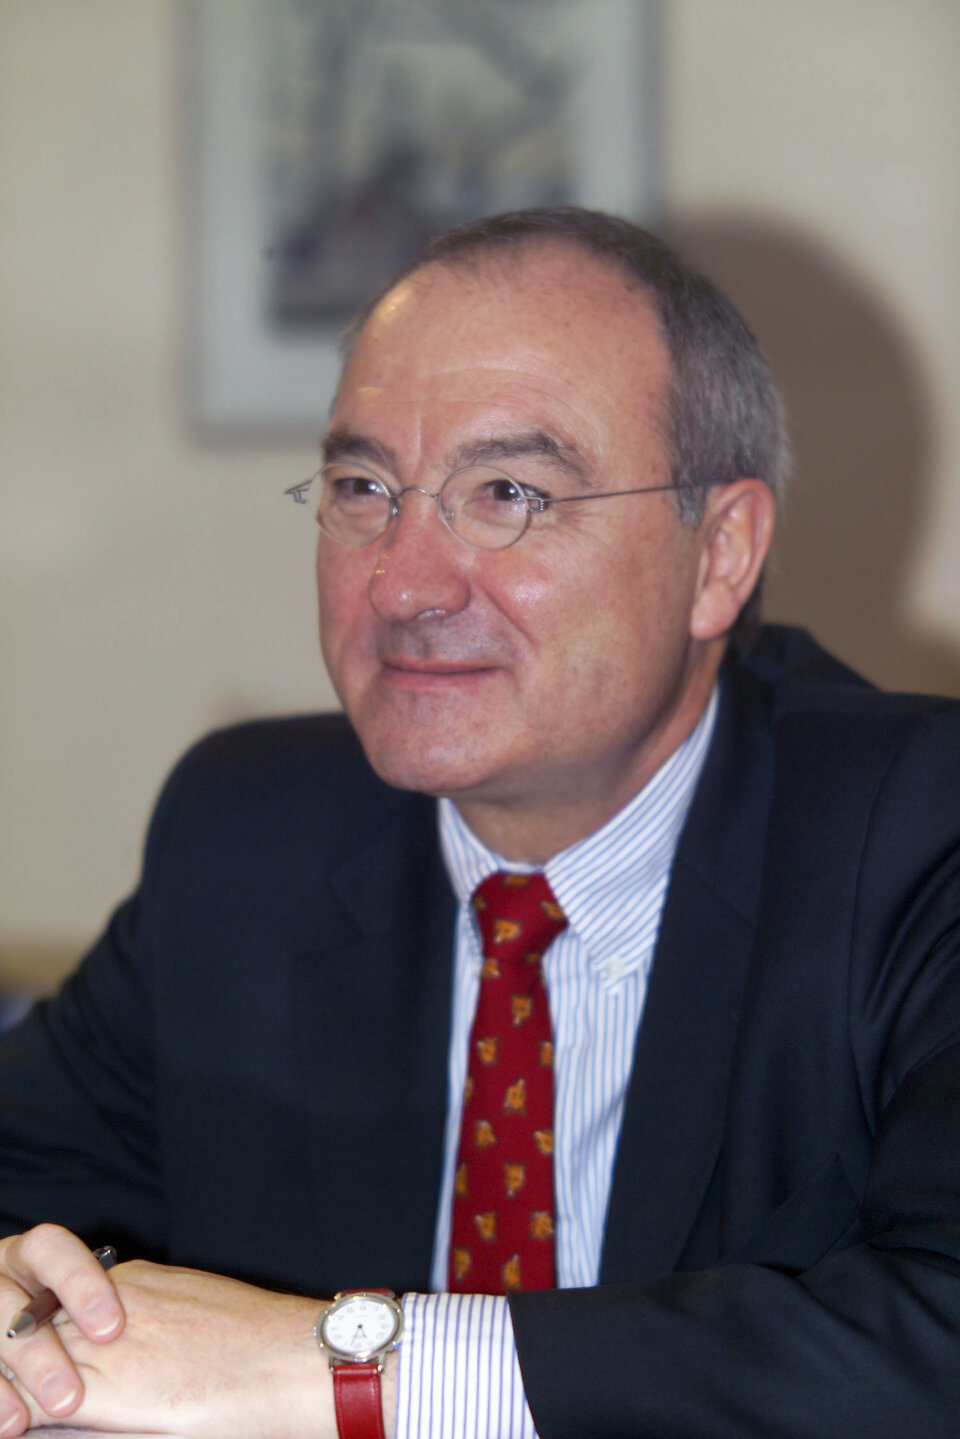 ESA's DG, Mr. Jean-Jacques Dordain